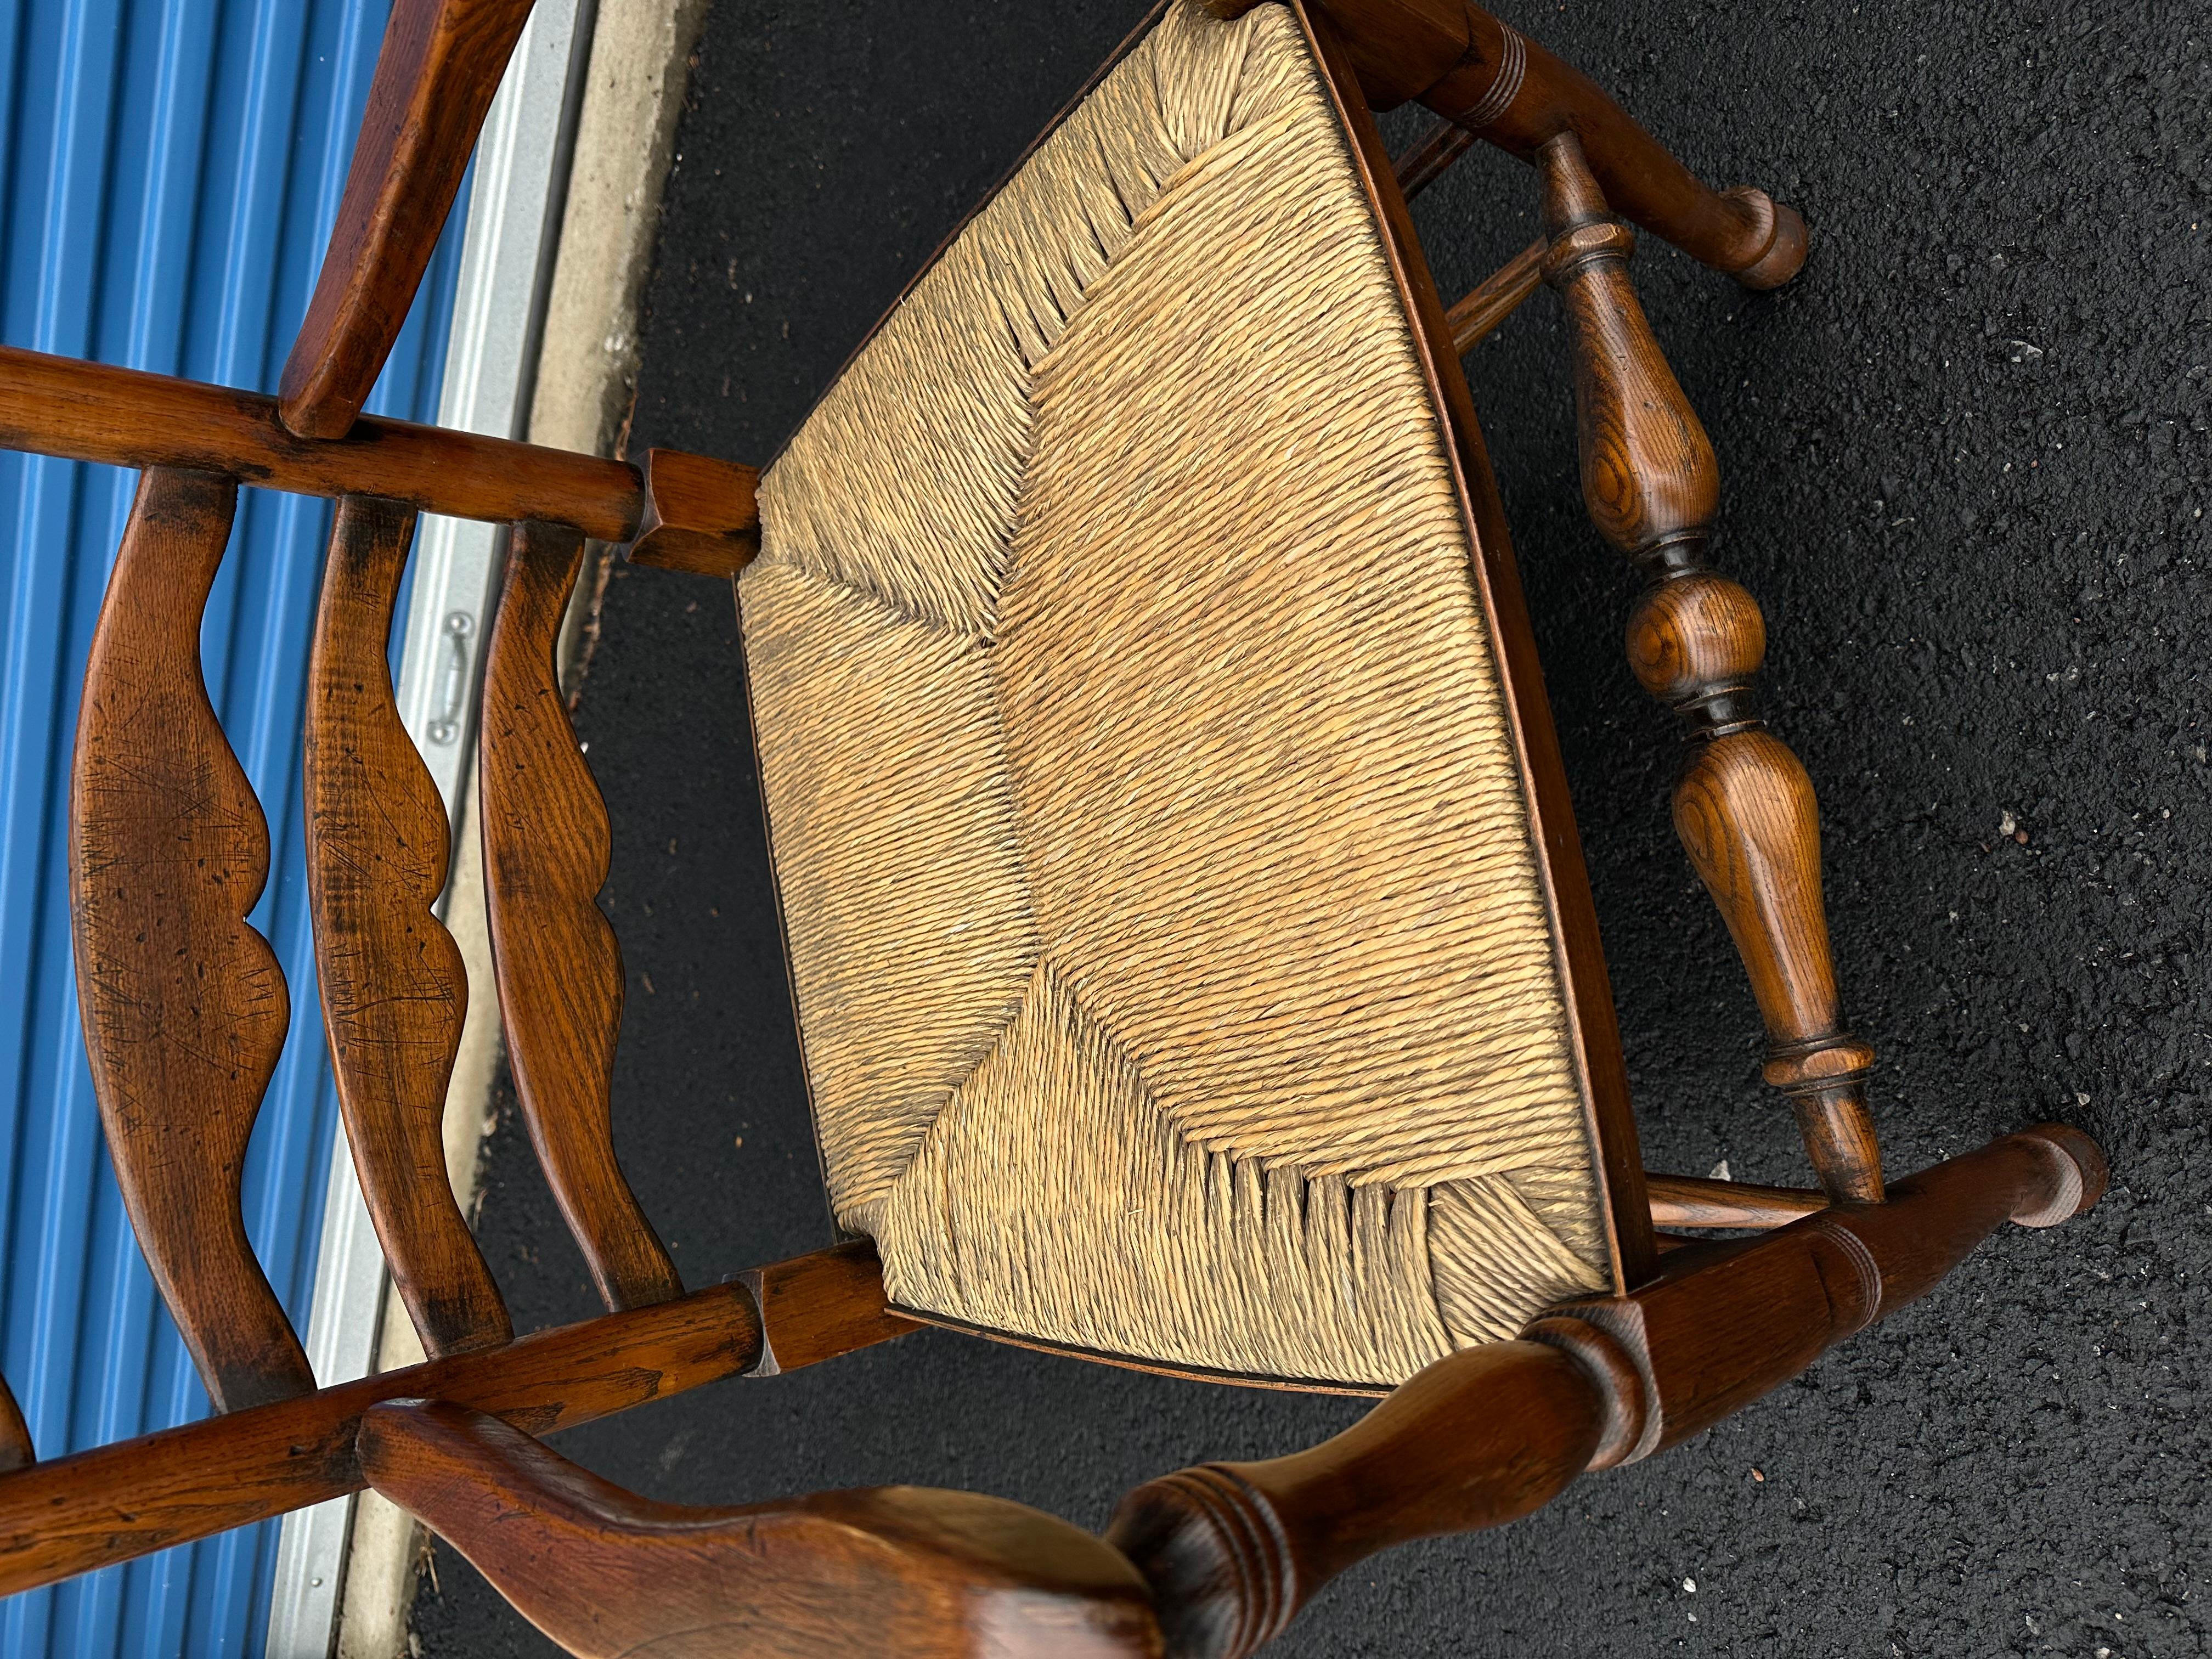 Dies ist ein schöner englischer Sessel! Das Gestell des Stuhls ist aus einem tief gefärbten Holz gefertigt, das im Laufe der Jahre eine hervorragende Patina entwickelt hat. Das Holz weist dunkle Töne auf, die mit helleren, honigfarbenen Akzenten